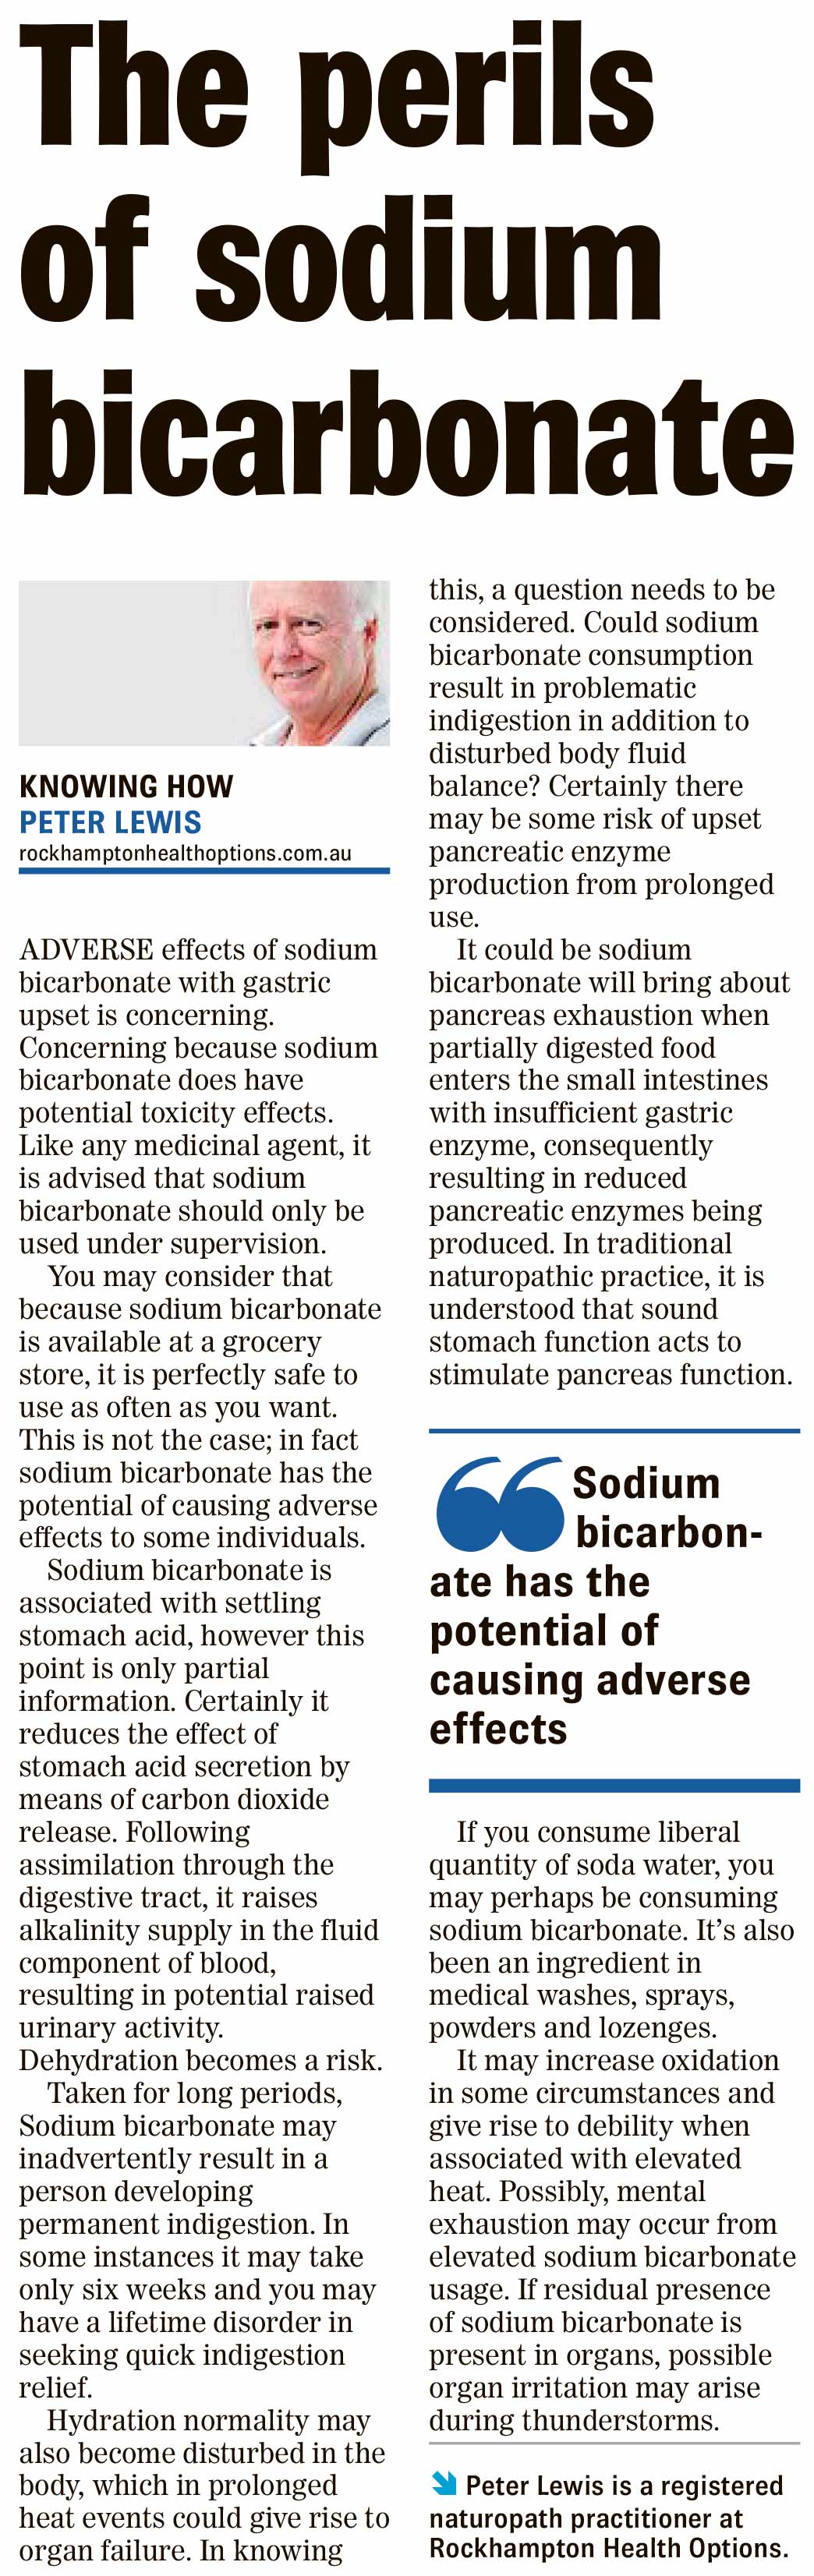 Article of the perils of sodium bicarbonate 